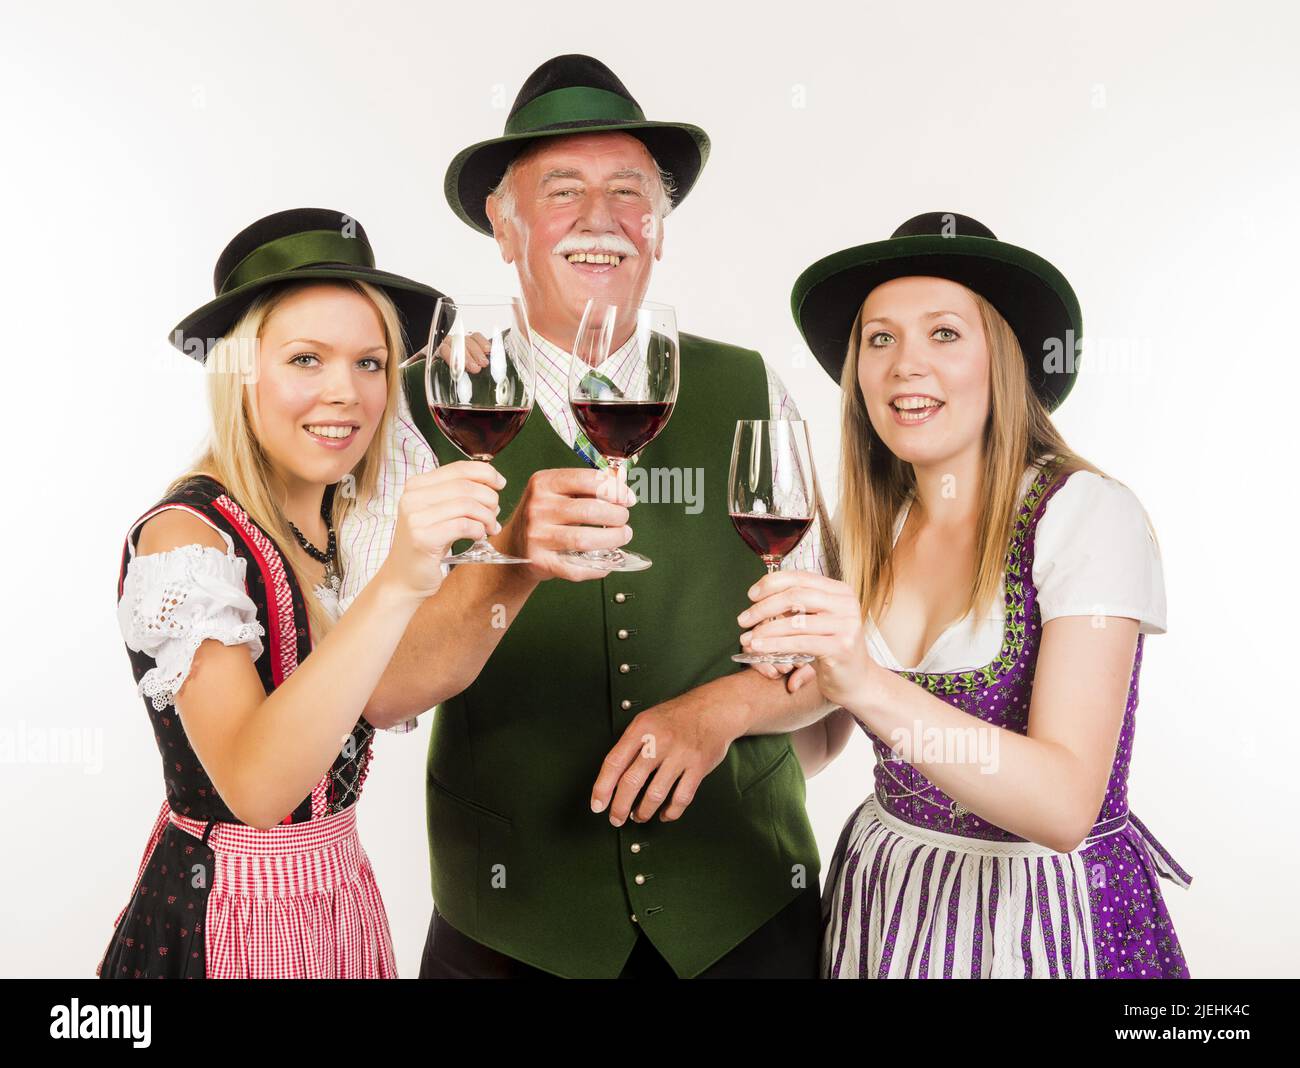 Senior und zwei junge Frauen in Tracht mit Weingl sur sern - persone in costume tradizionale con bicchieri da vino Foto Stock